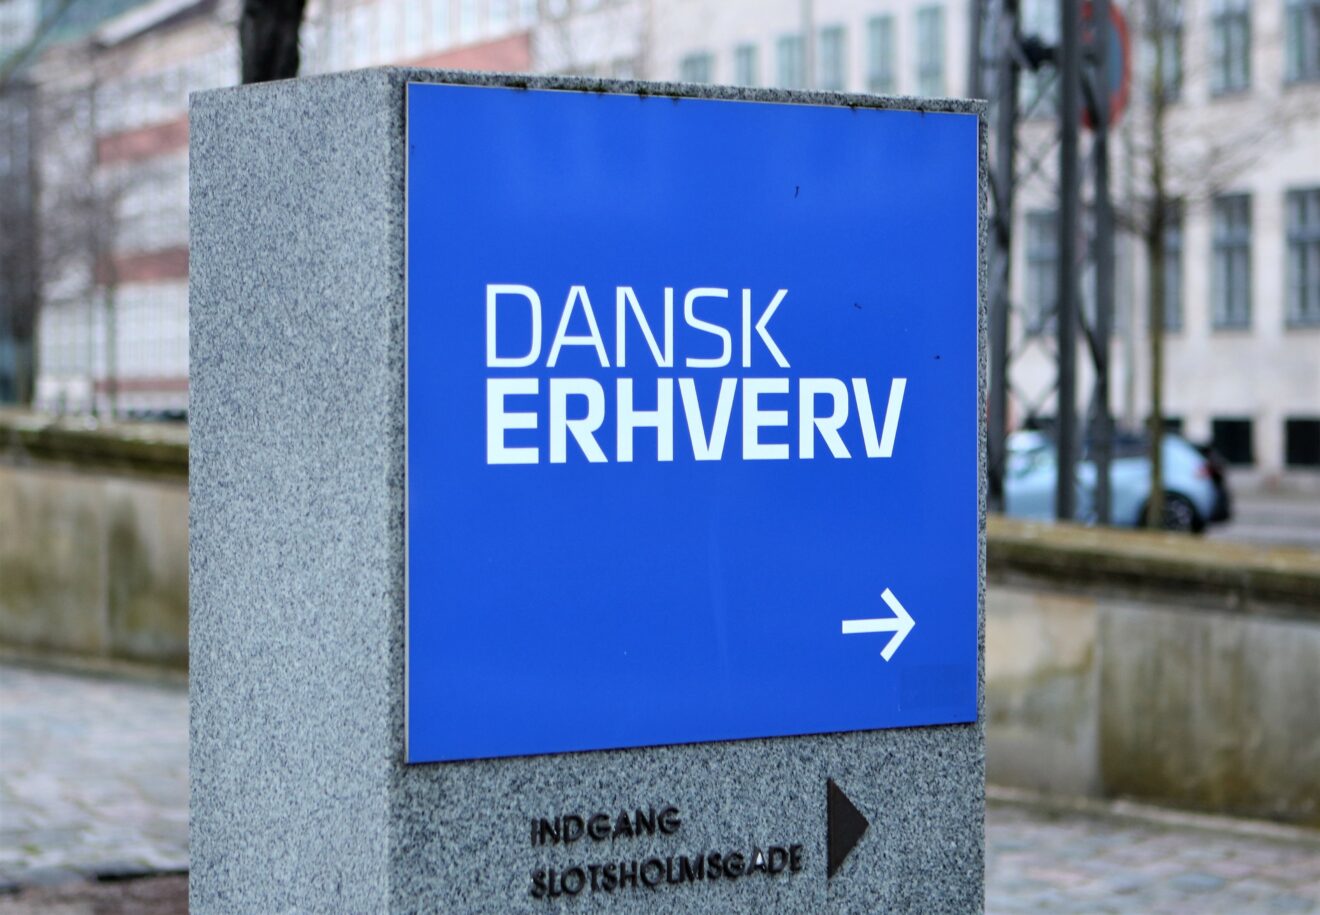 Dansk Erhverv: Privathospitaler tager ansvar for at bringe ventelister ned